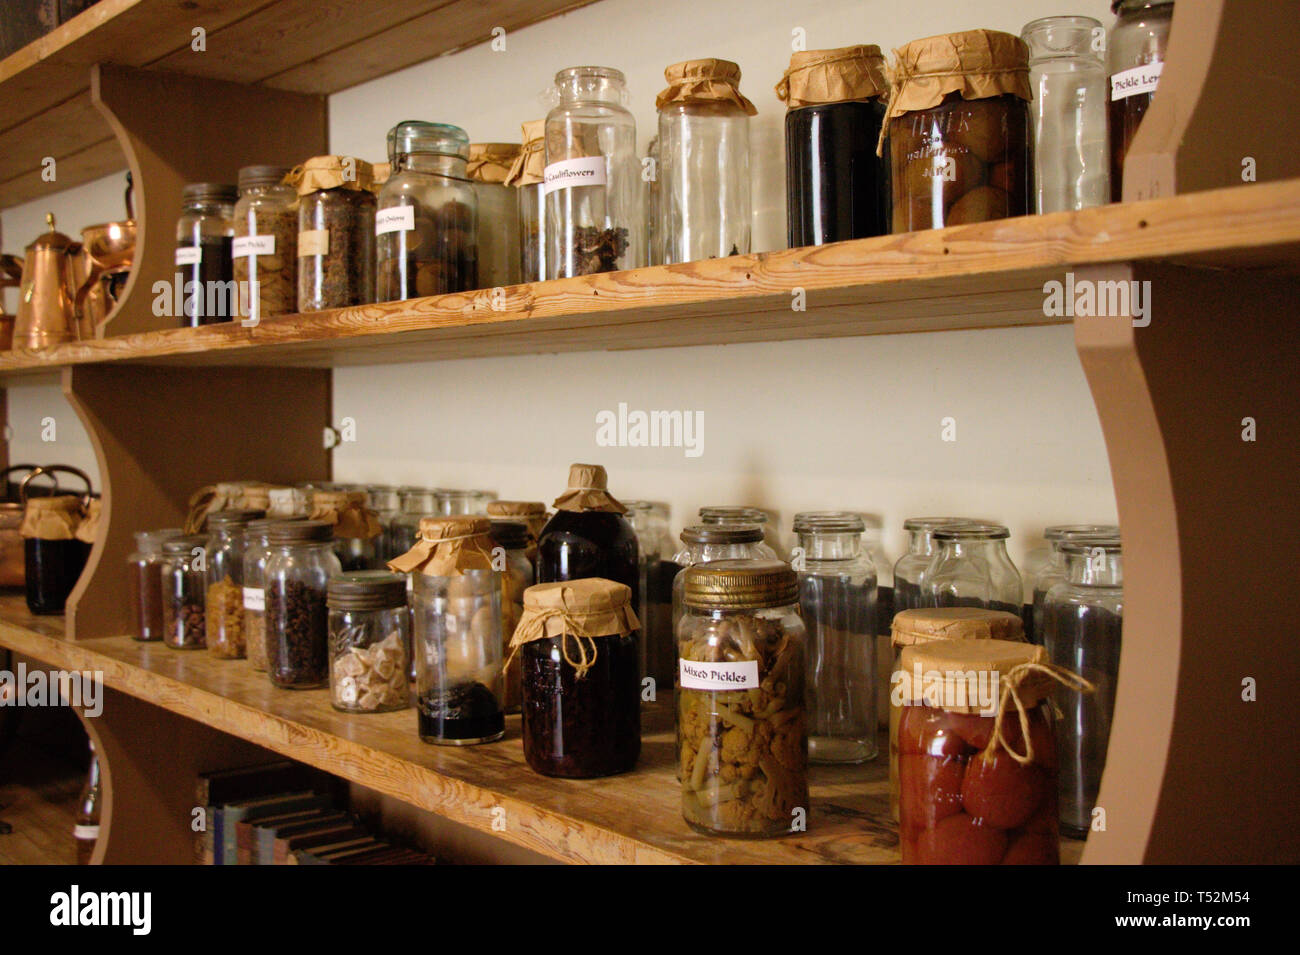 Reihe von Gläsern auf einem Regal. Antike Küche. Konserven, Gewürze. Stockfoto